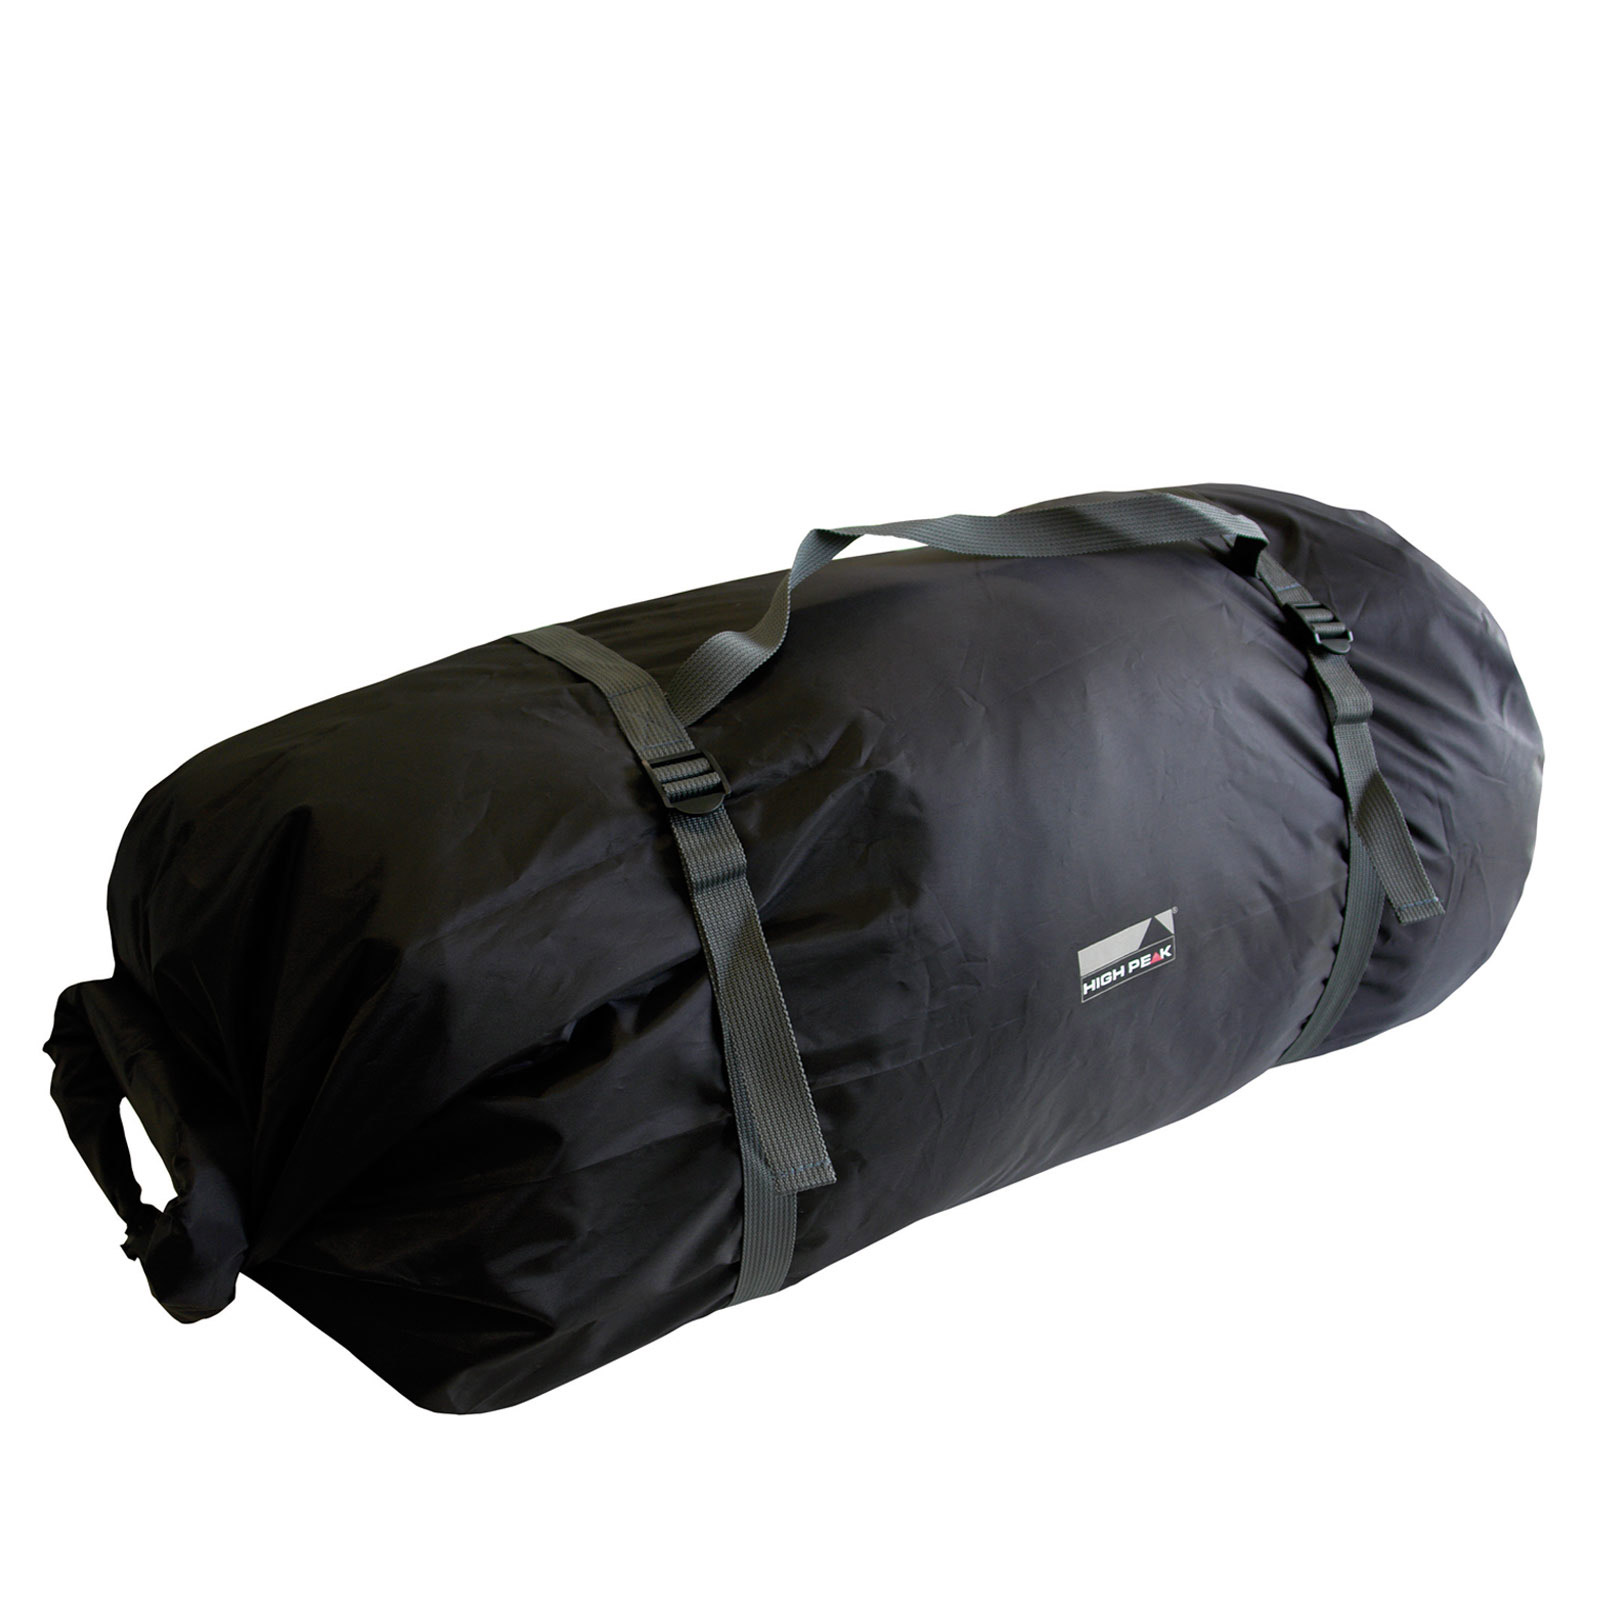 Zelt Kompression Aufbewahrungstasche Duffel Tasche für Camping Heringe 